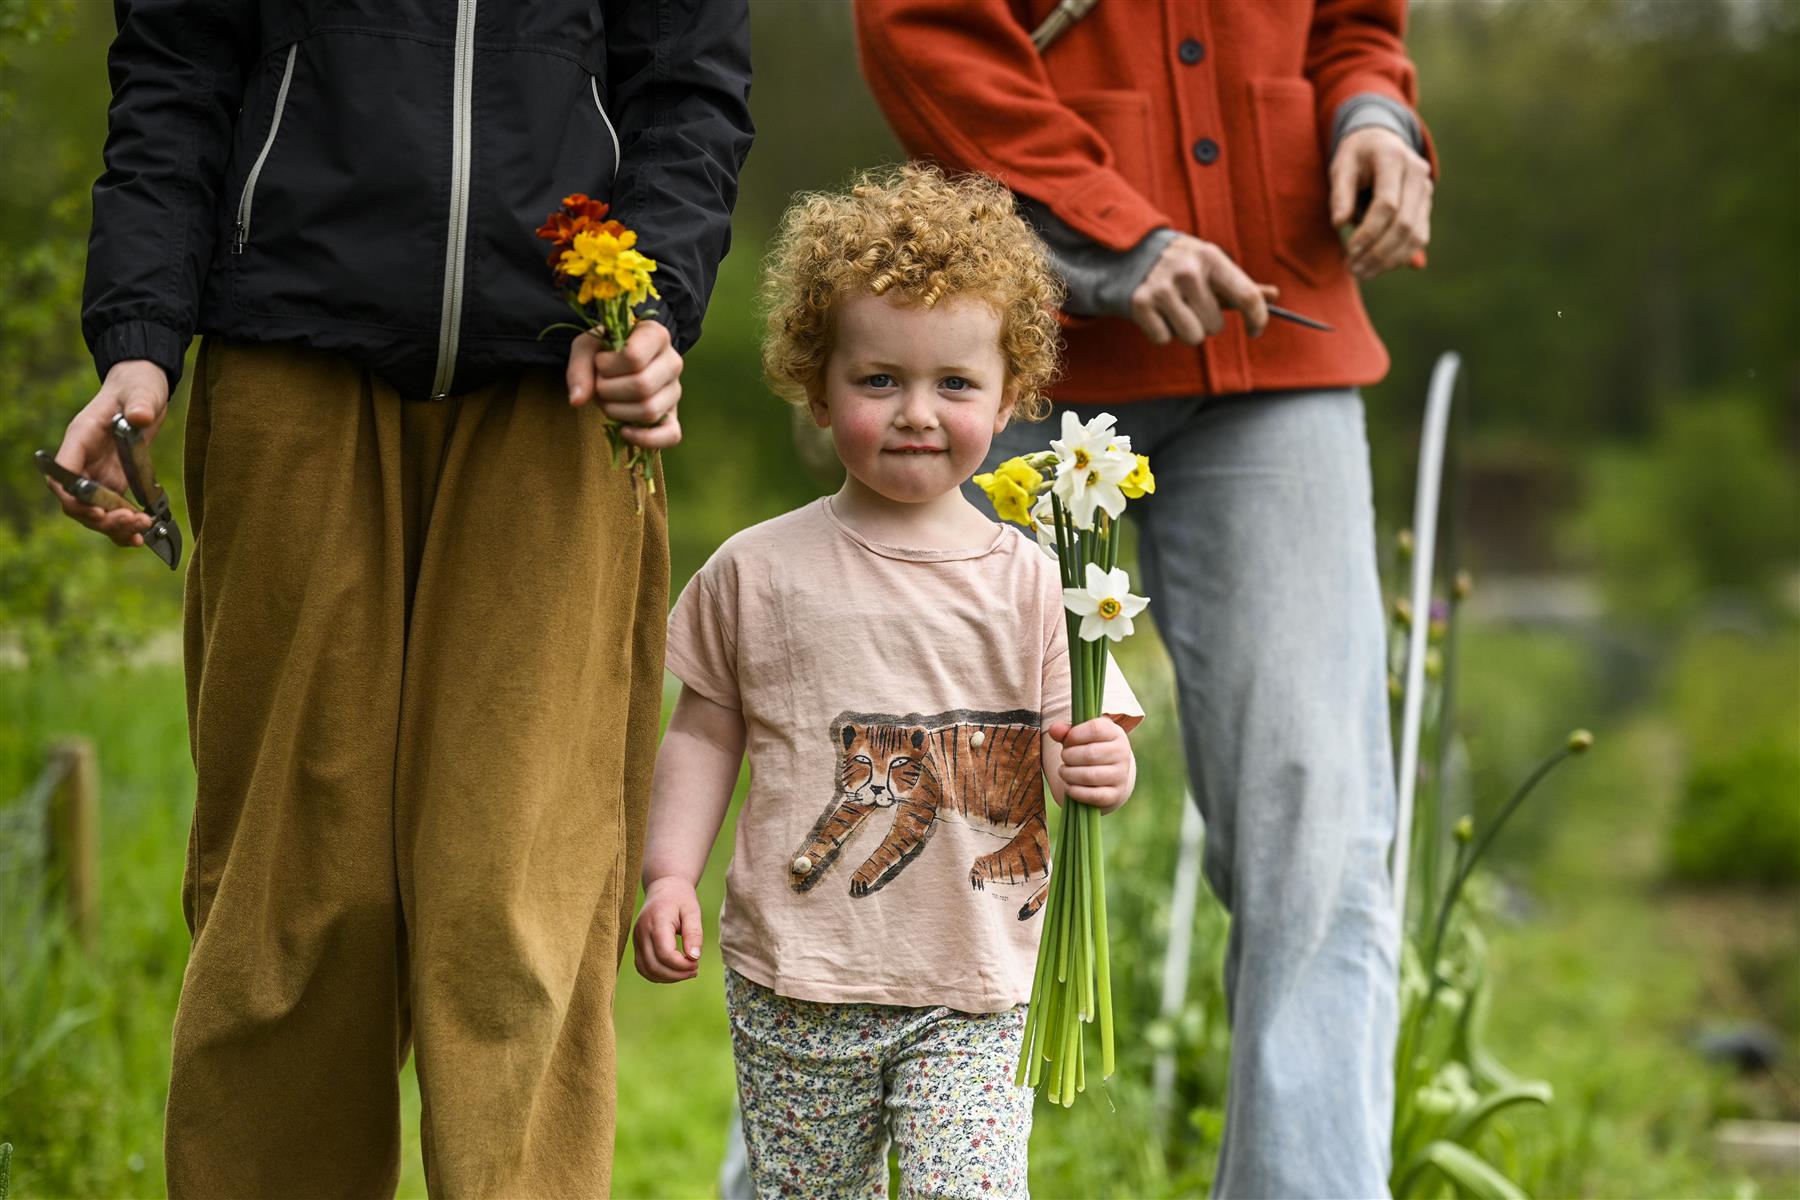 FleurAkker est la ferme à fleurs  autocueillette de Groot Eiland.